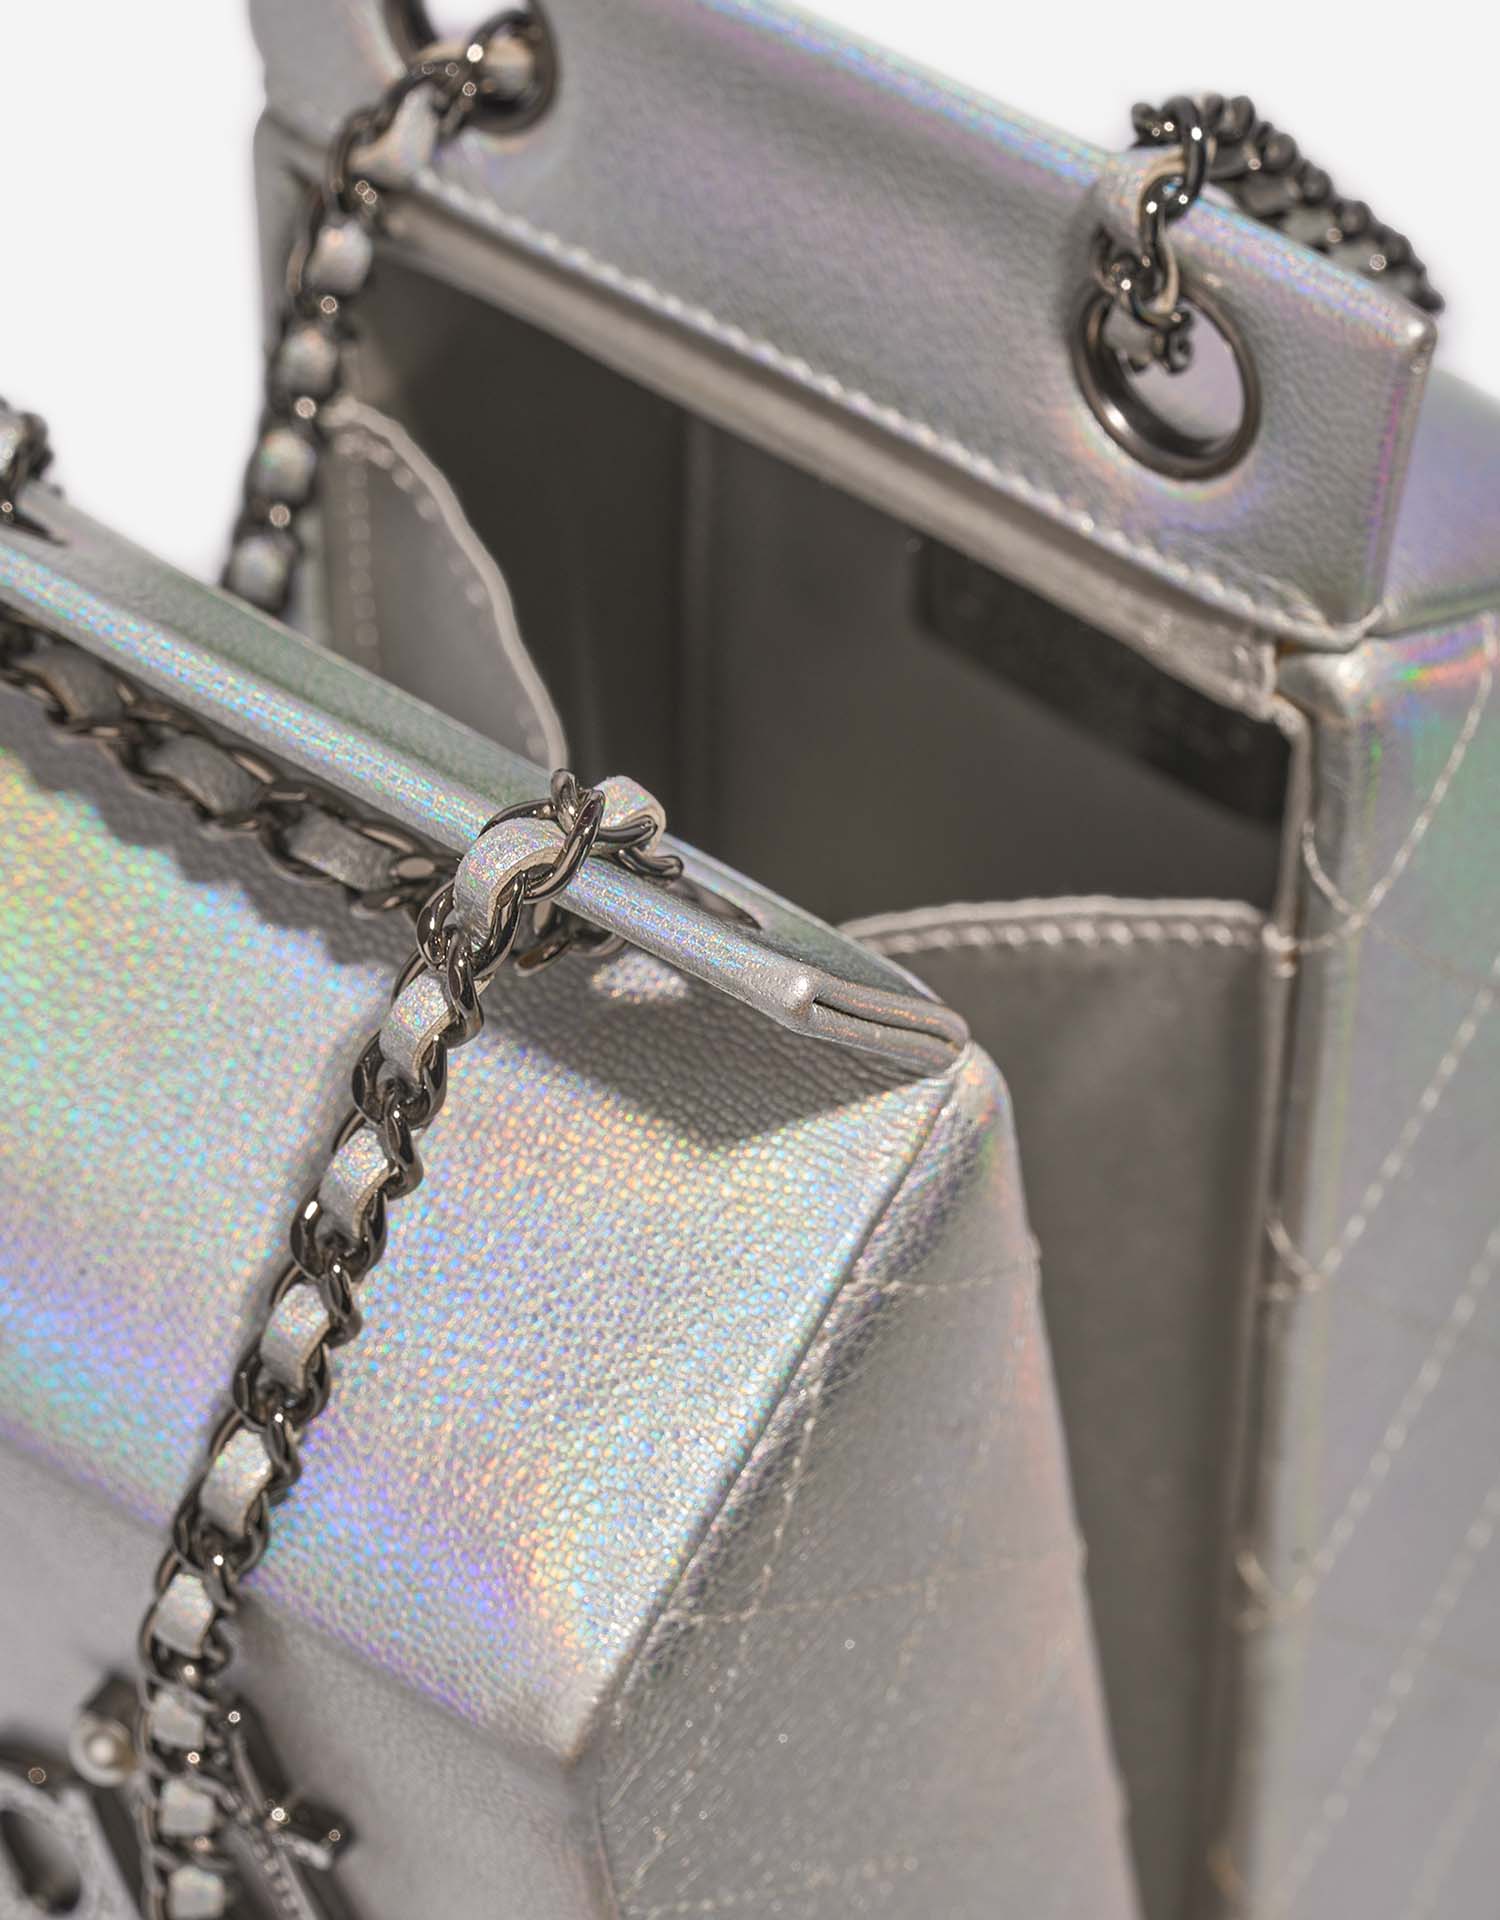 Chanel MilkCarton Silver Closing System | Verkaufen Sie Ihre Designer-Tasche auf Saclab.com